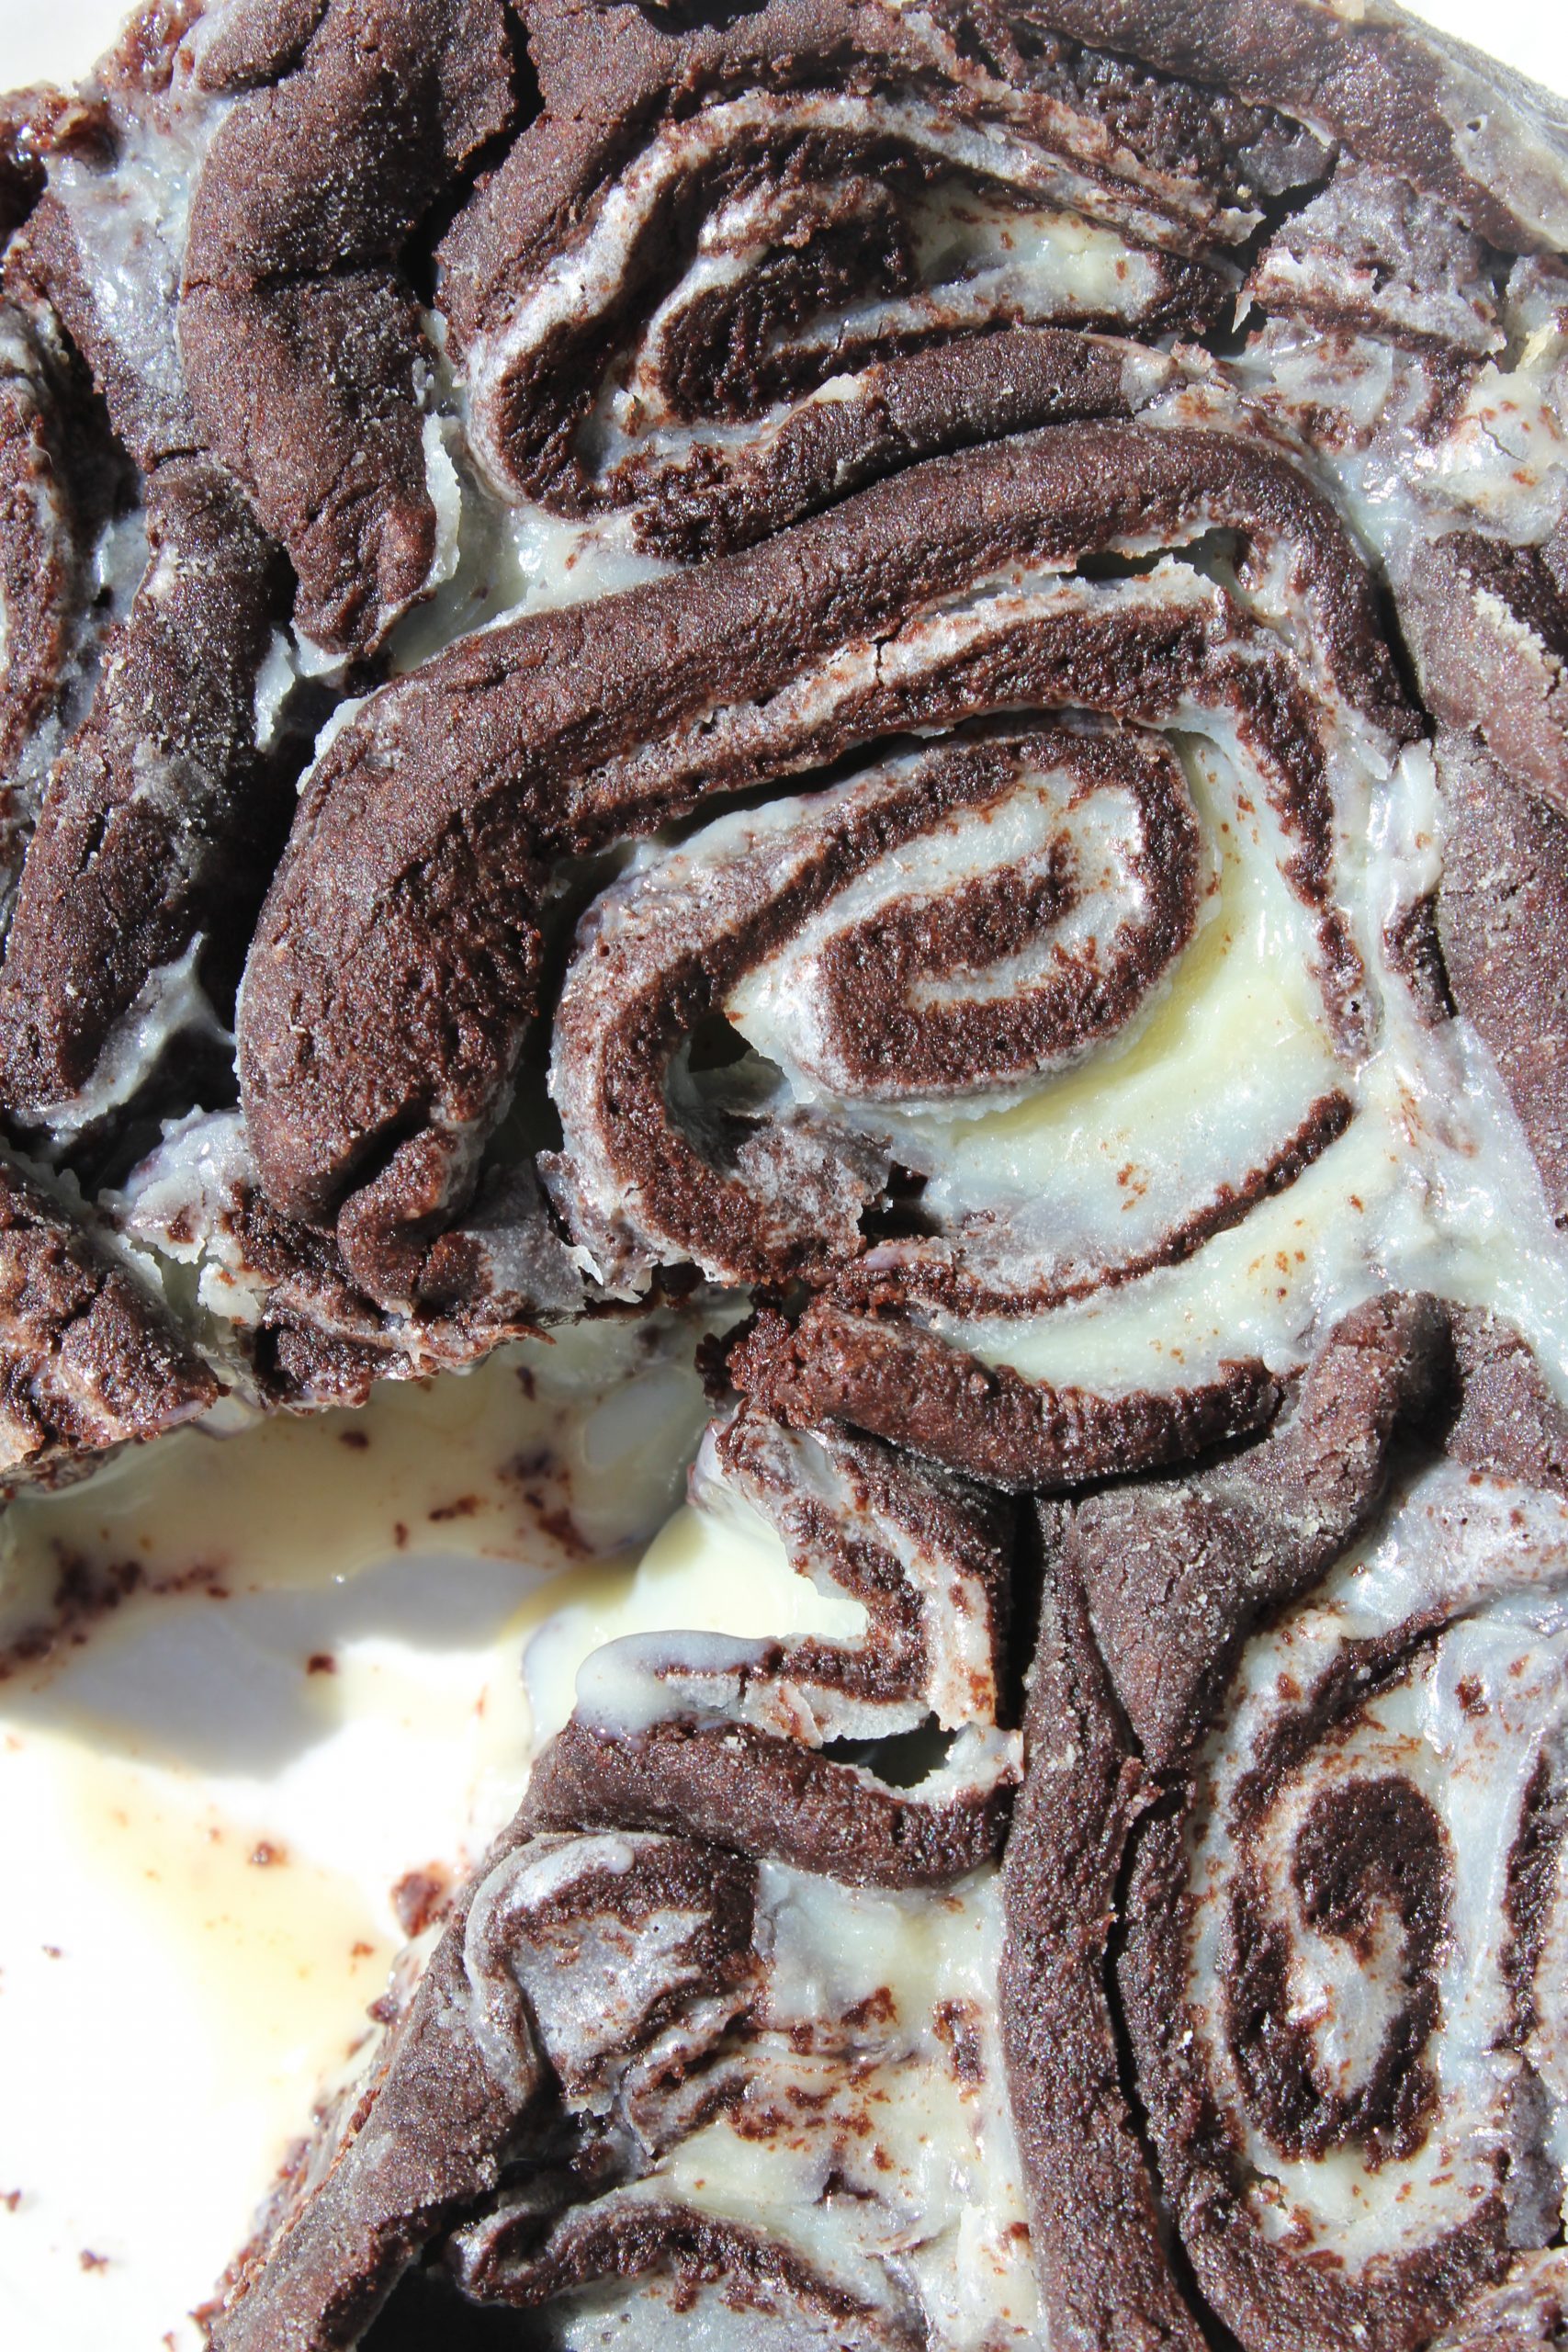 מתכון לעוגת עוגיות שושנים בצק שוקולד קקאו במילוי גנאש שוקולד לבן (עוגת עוגיות אמסטרדם)